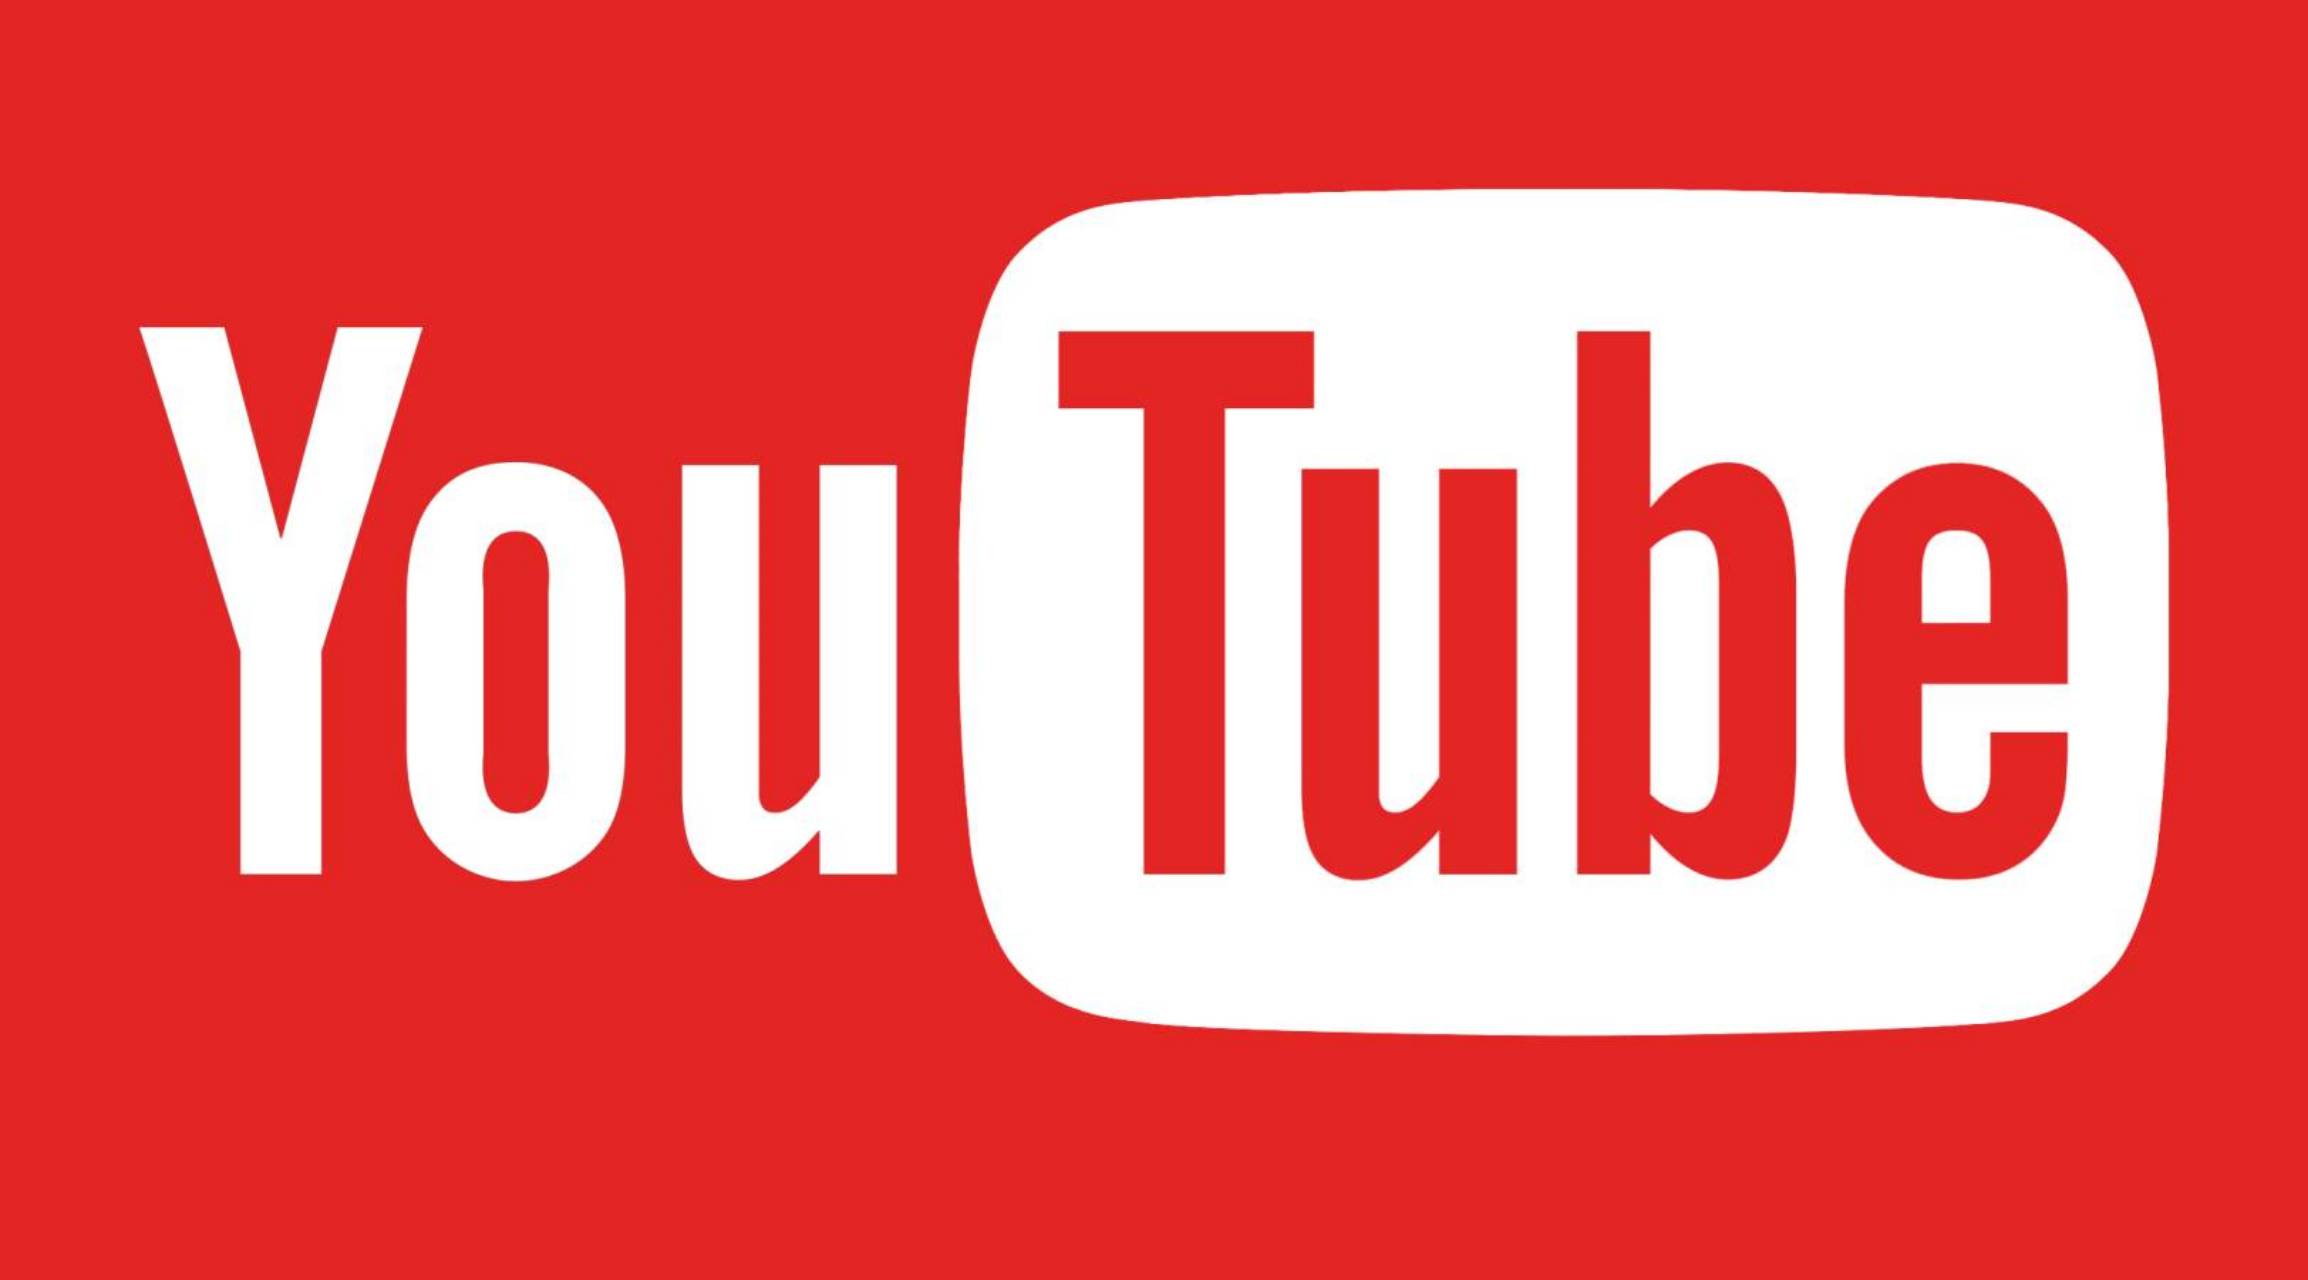 YouTube De nieuwe update uitgebracht voor telefoons, tablets